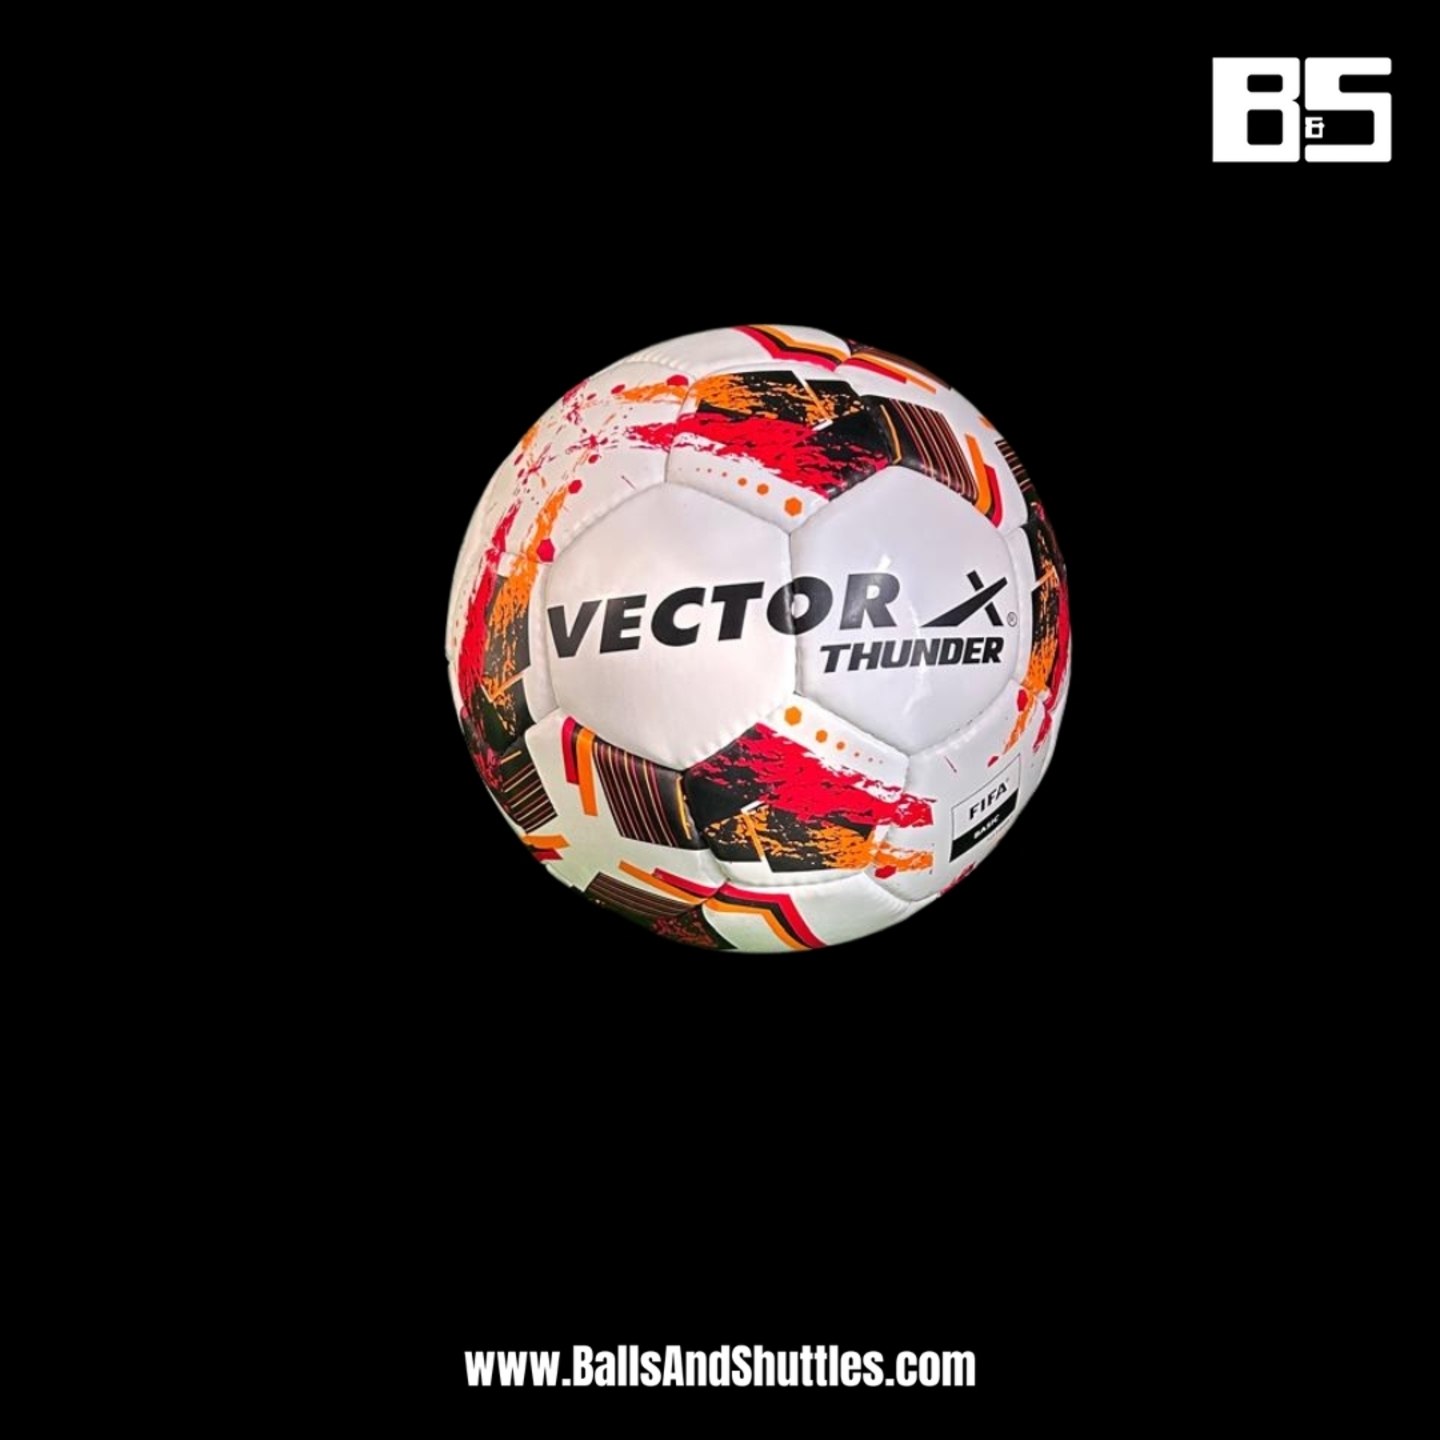 VECTOR X THUNDER FOOTBALL | VECTOR X SIZE 5 FOOTBALL | VECTOR X FOOTBALL